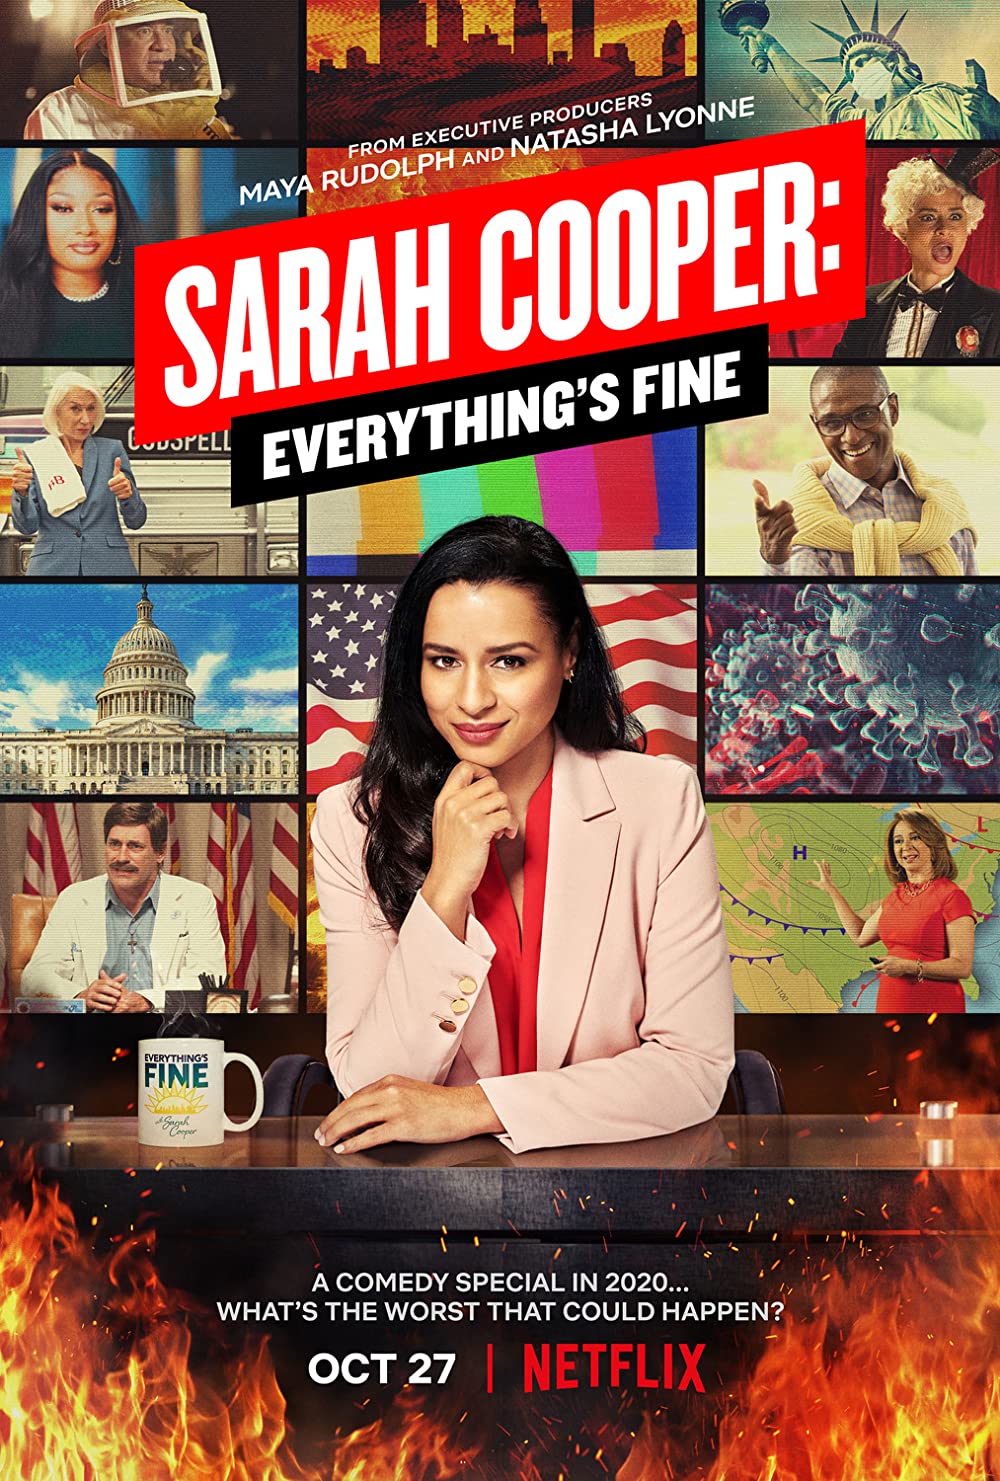 Filmbeschreibung zu Sarah Cooper: Everything's Fine